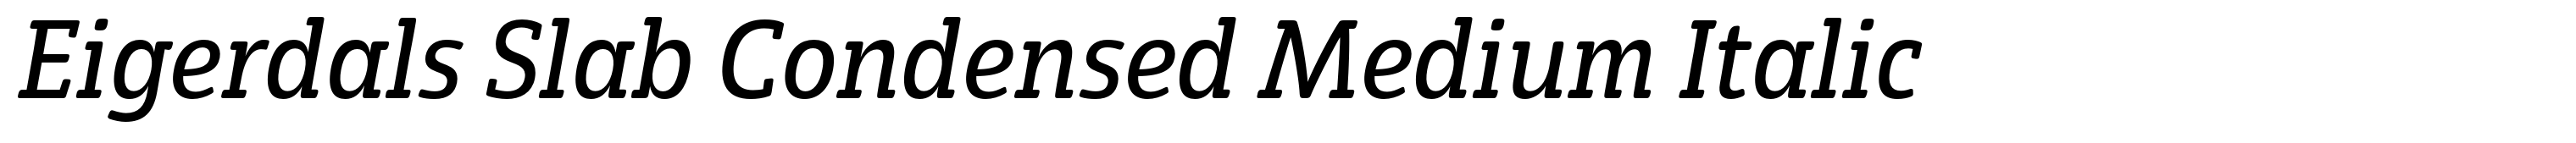 Eigerdals Slab Condensed Medium Italic